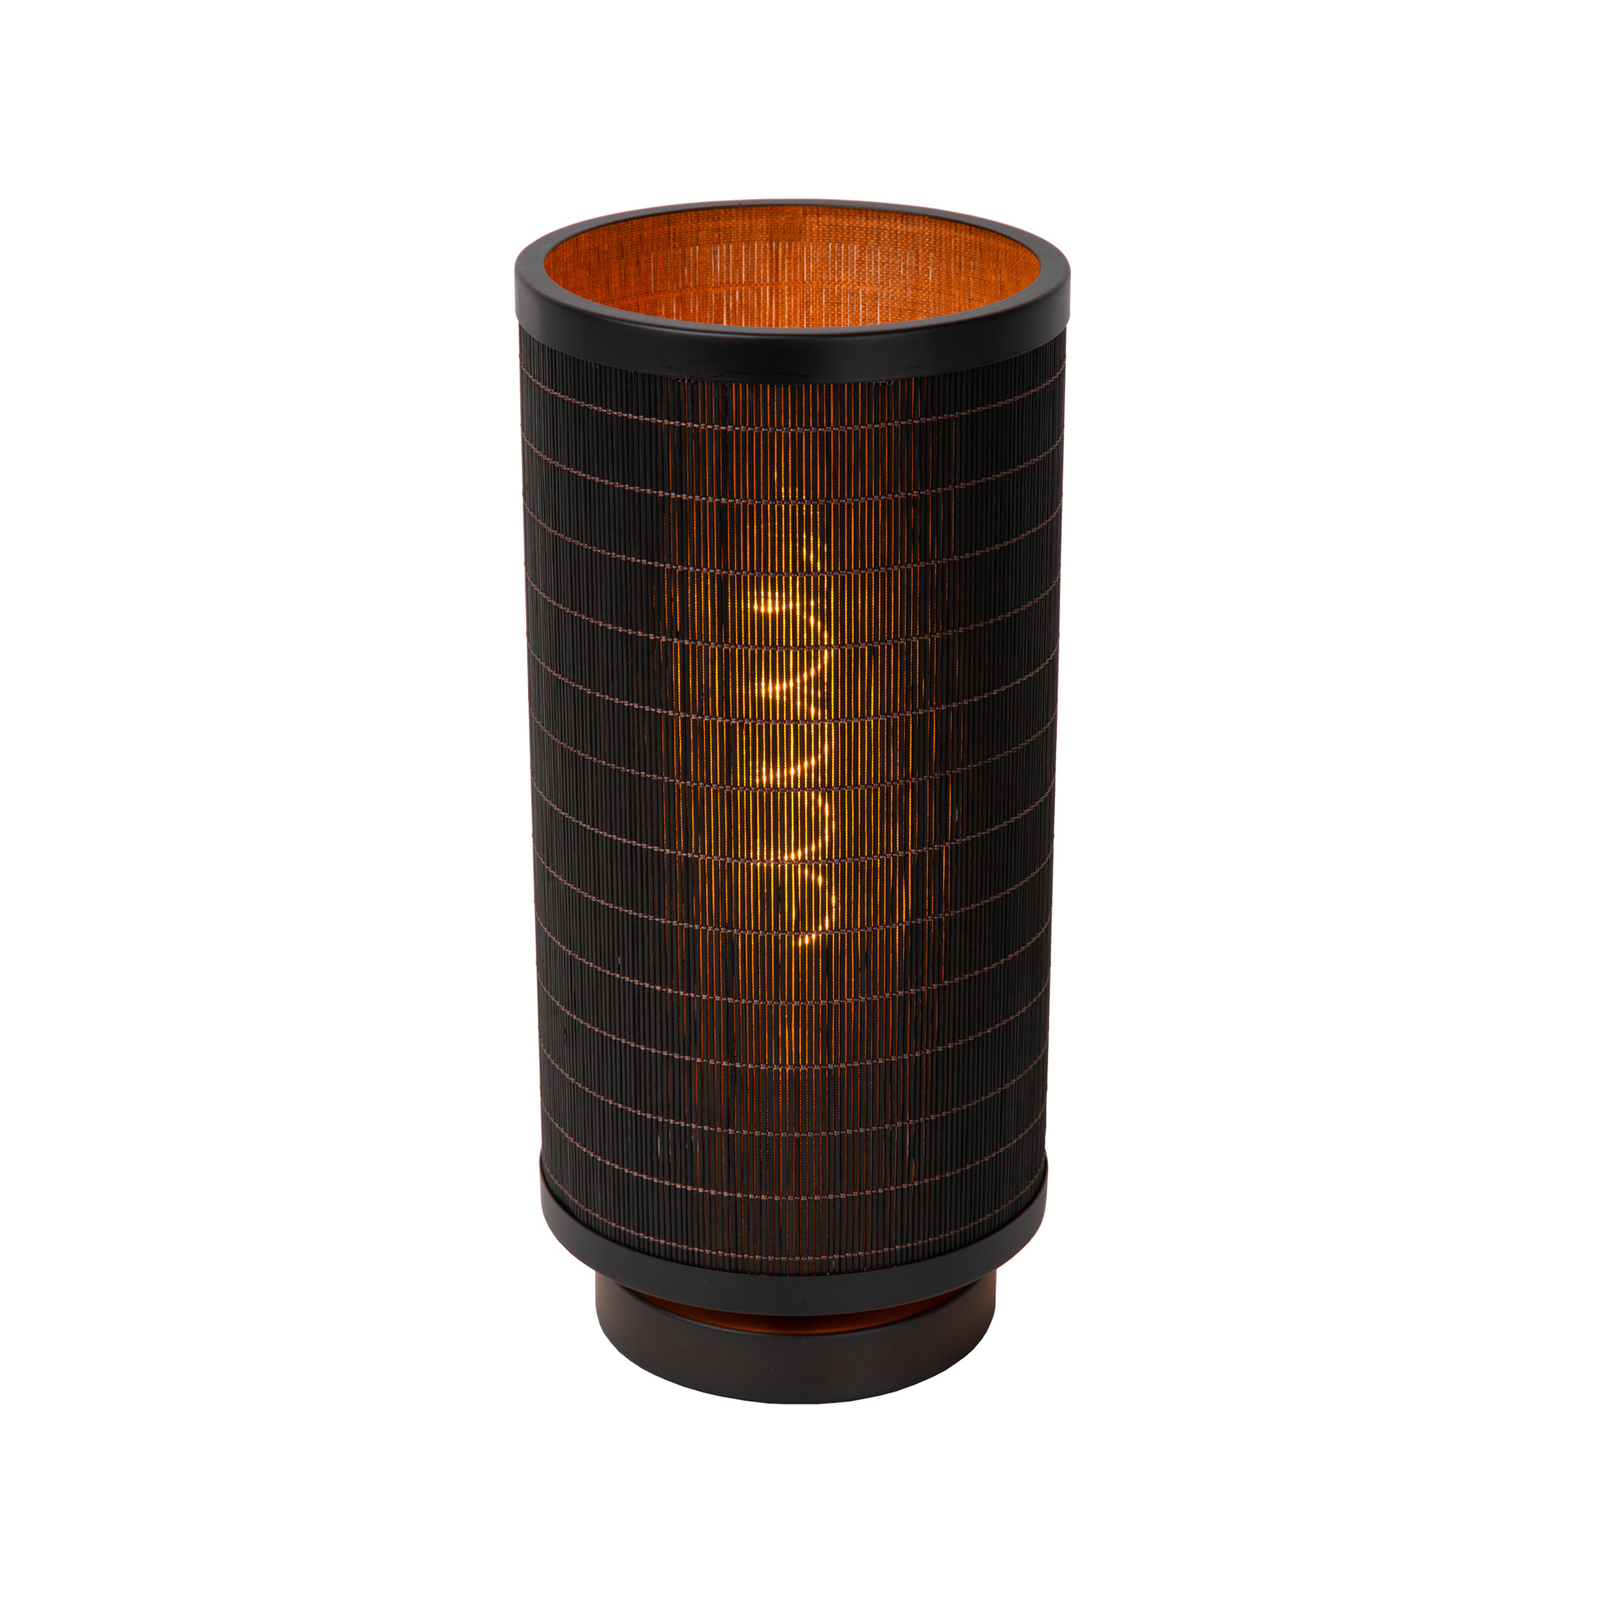 Tagalog table lamp made of bamboo, black